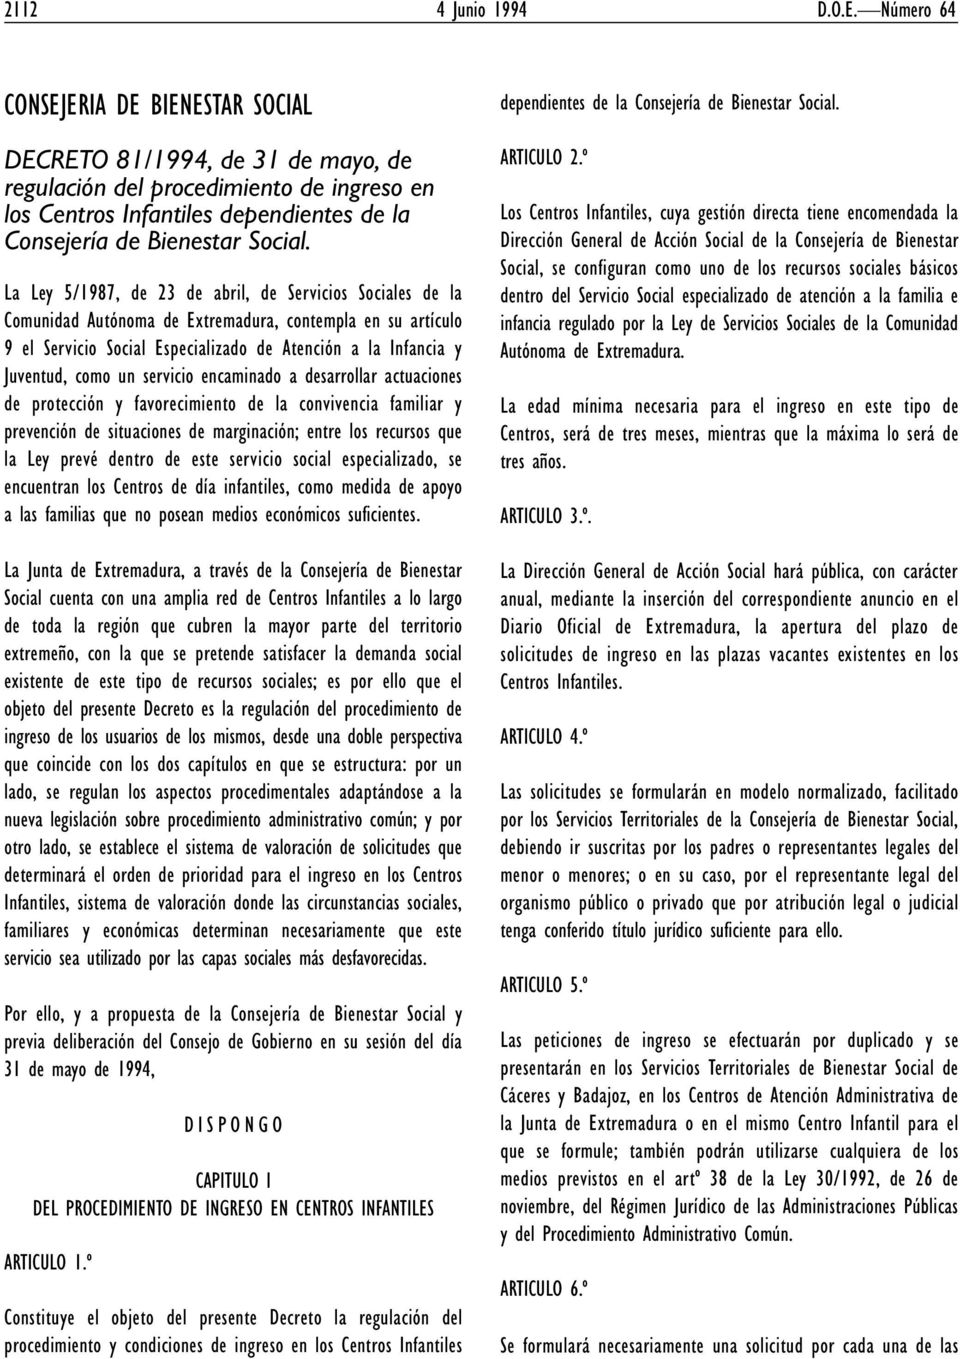 La Ley 5/1987, de 23 de abril, de Servicios Sociales de la Comunidad Autónoma de Extremadura, contempla en su artículo 9 el Servicio Social Especializado de Atención a la Infancia y Juventud, como un